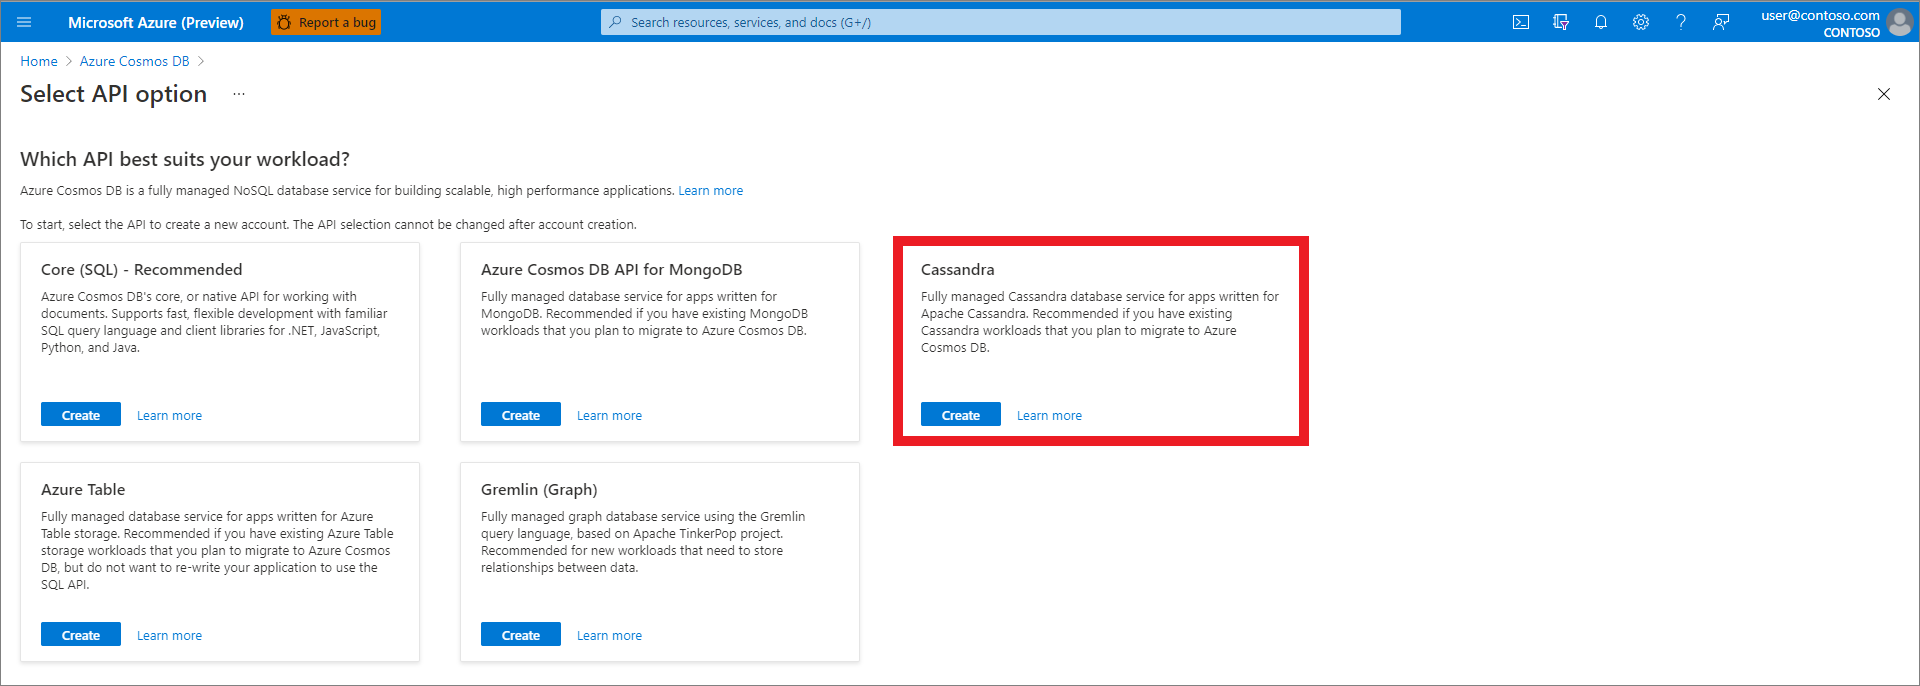 Portal do Azure, crie um recurso, selecione a opção API, Cassandra selecionada.